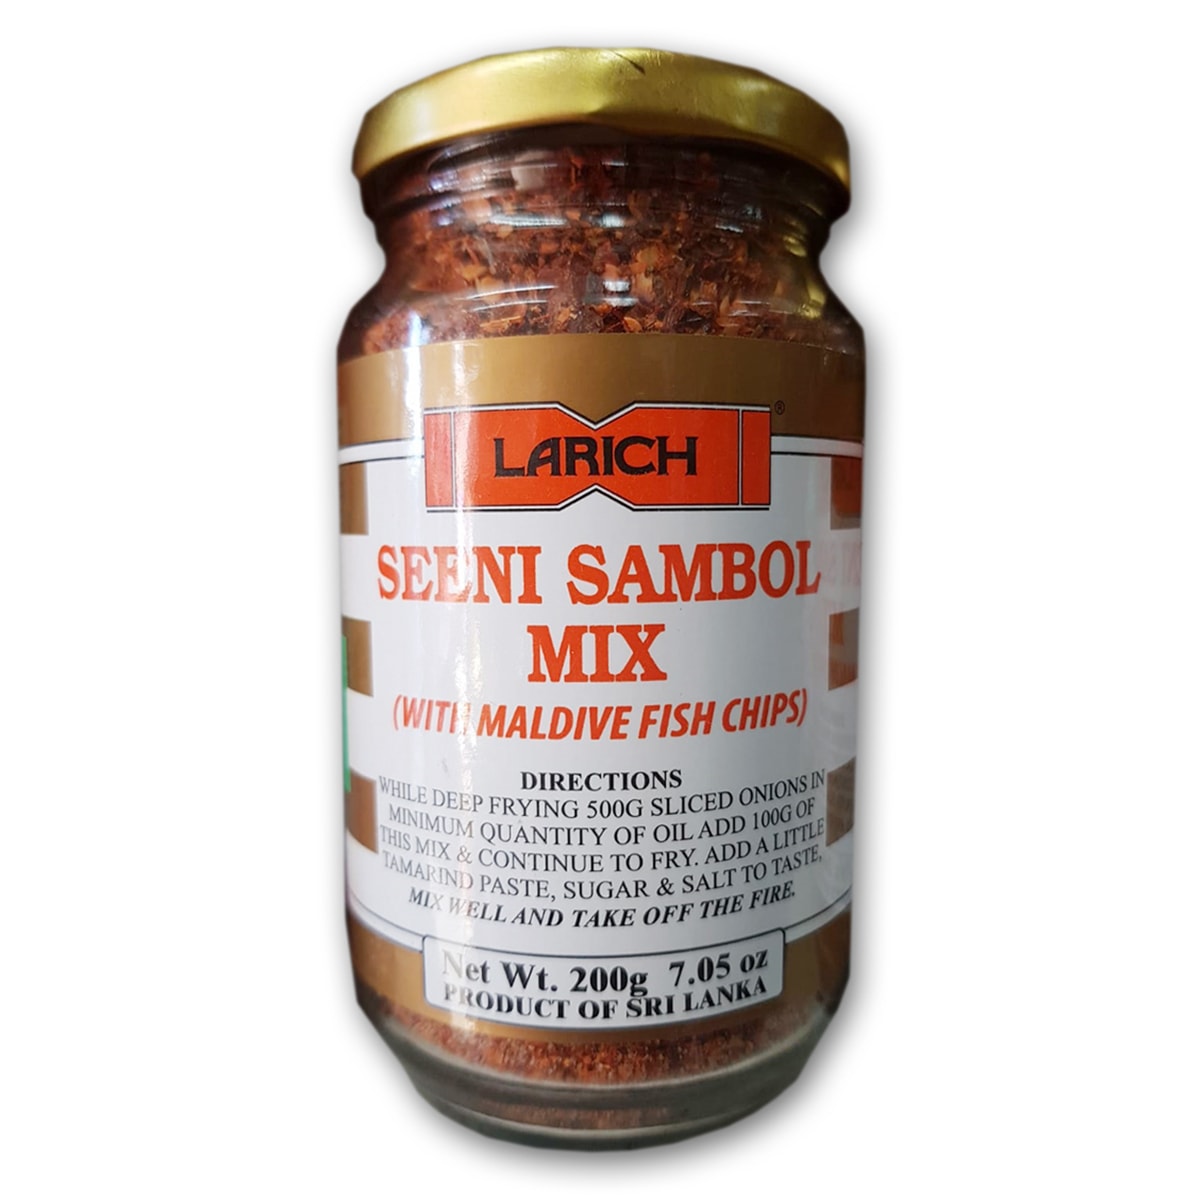 Buy Larich Seeni Sambol Mix - 200 gm